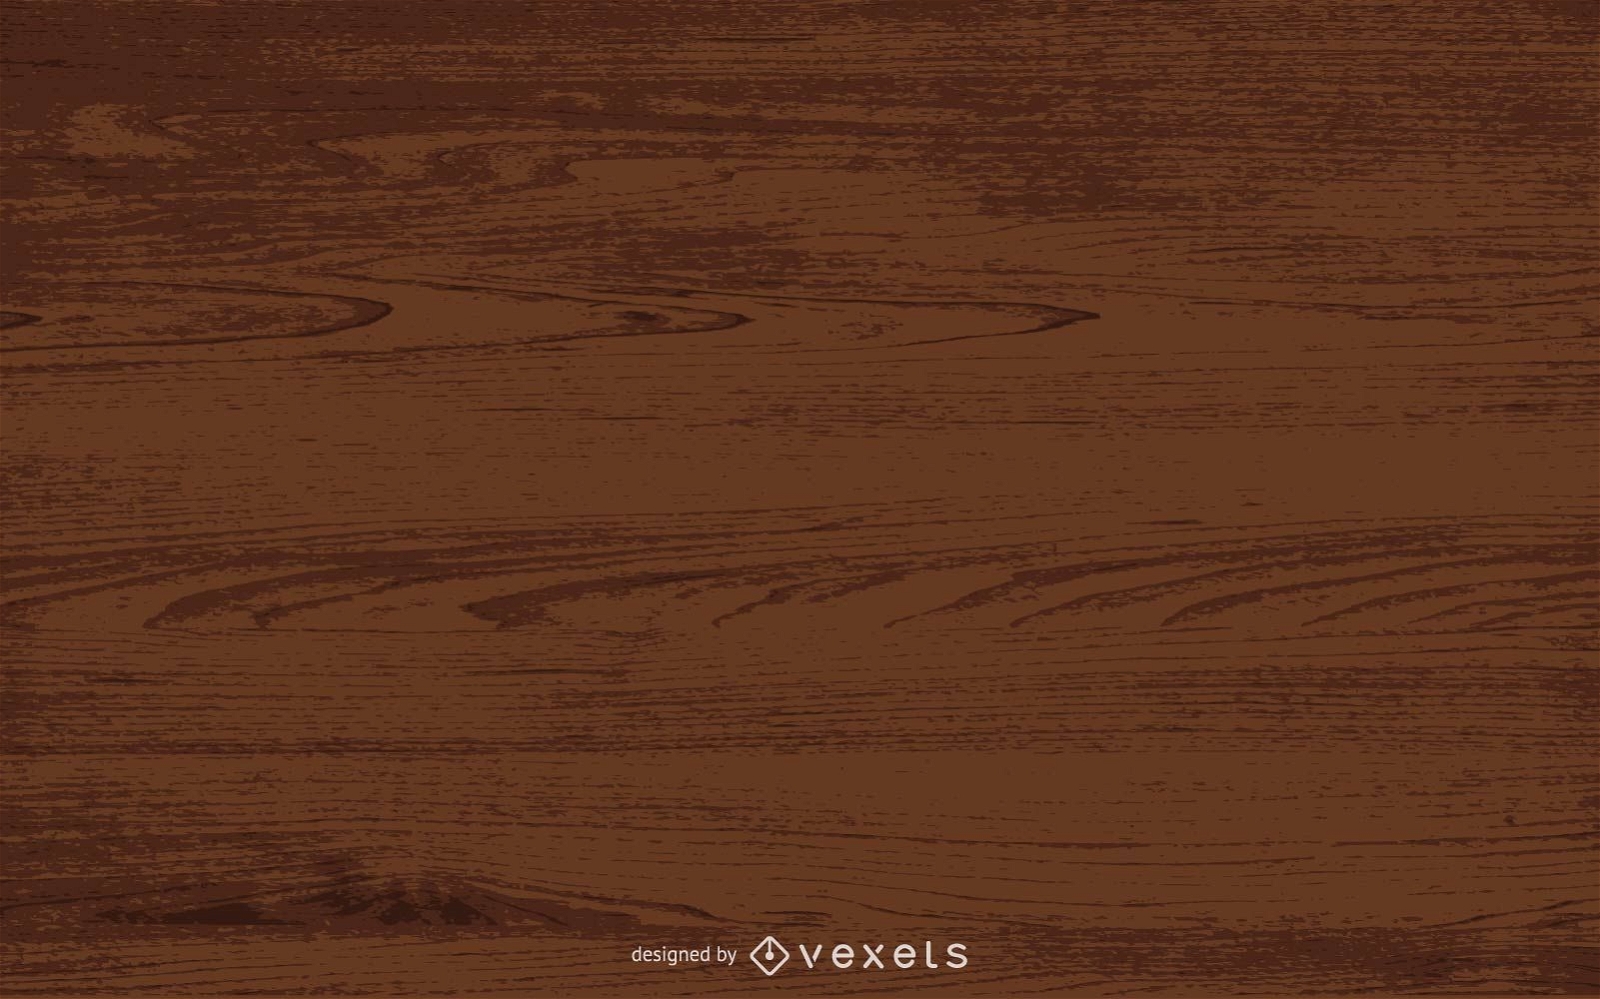 Wood Texture in brown tones